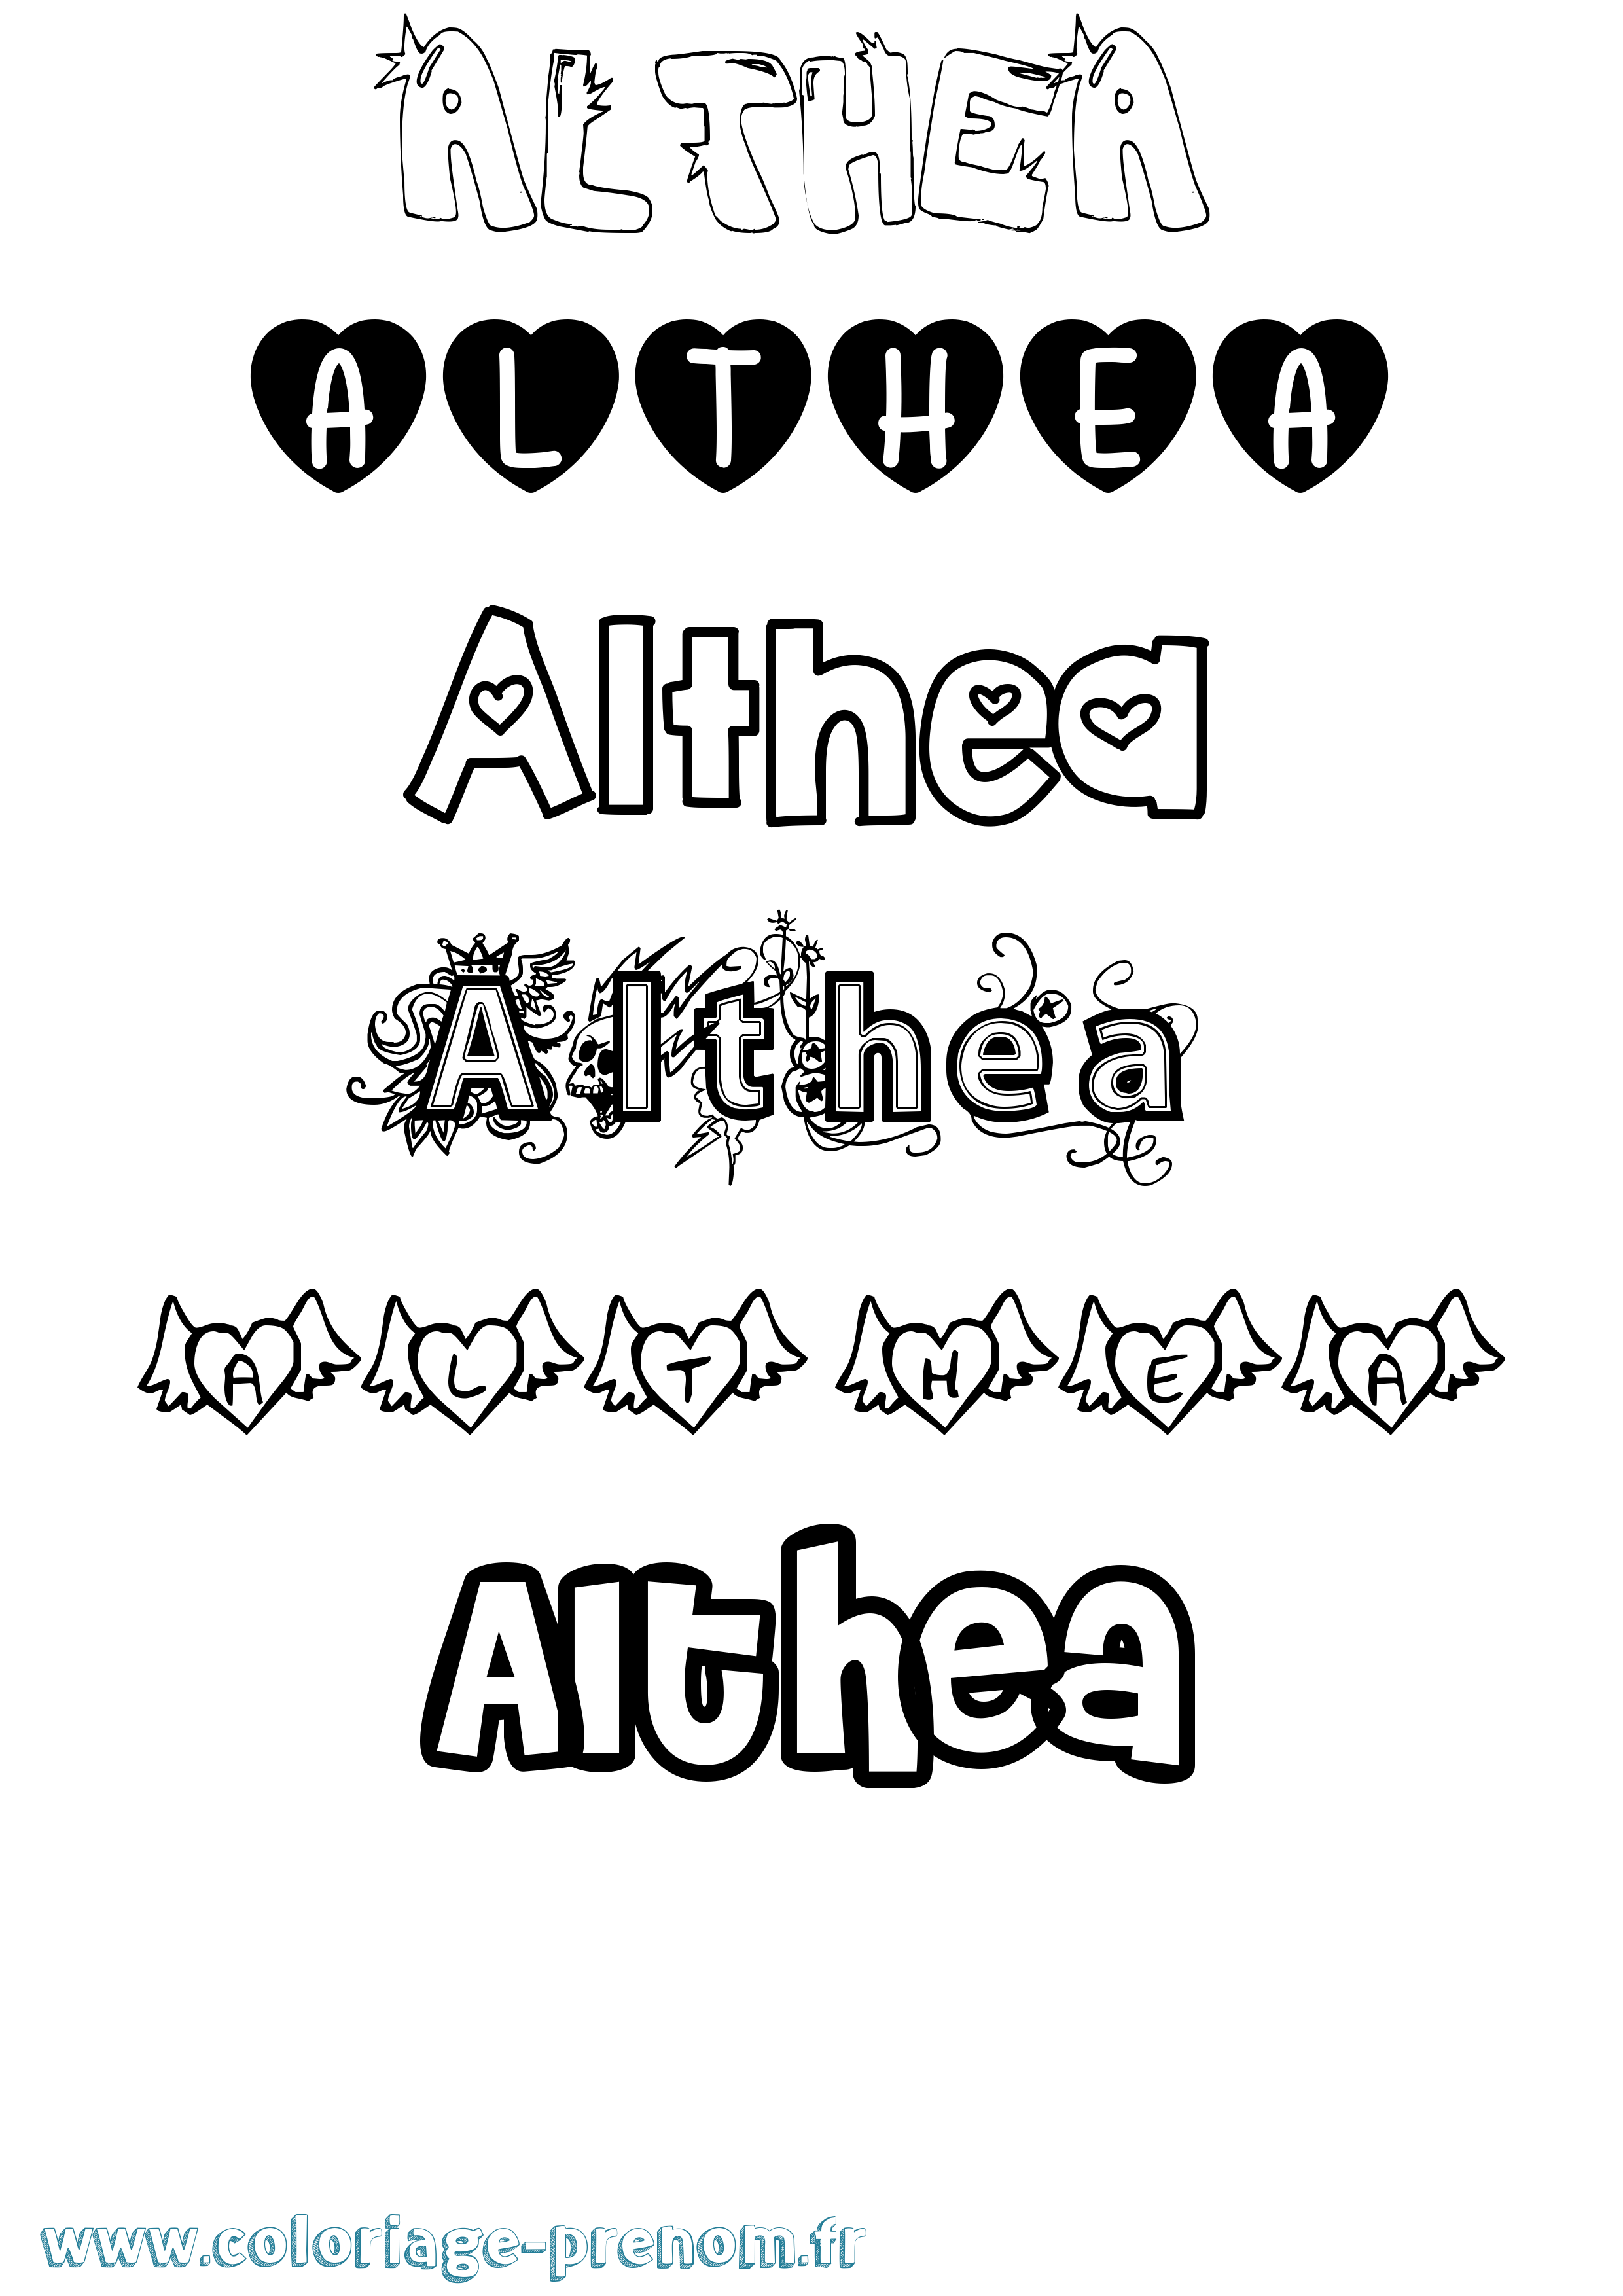 Coloriage prénom Althea Girly